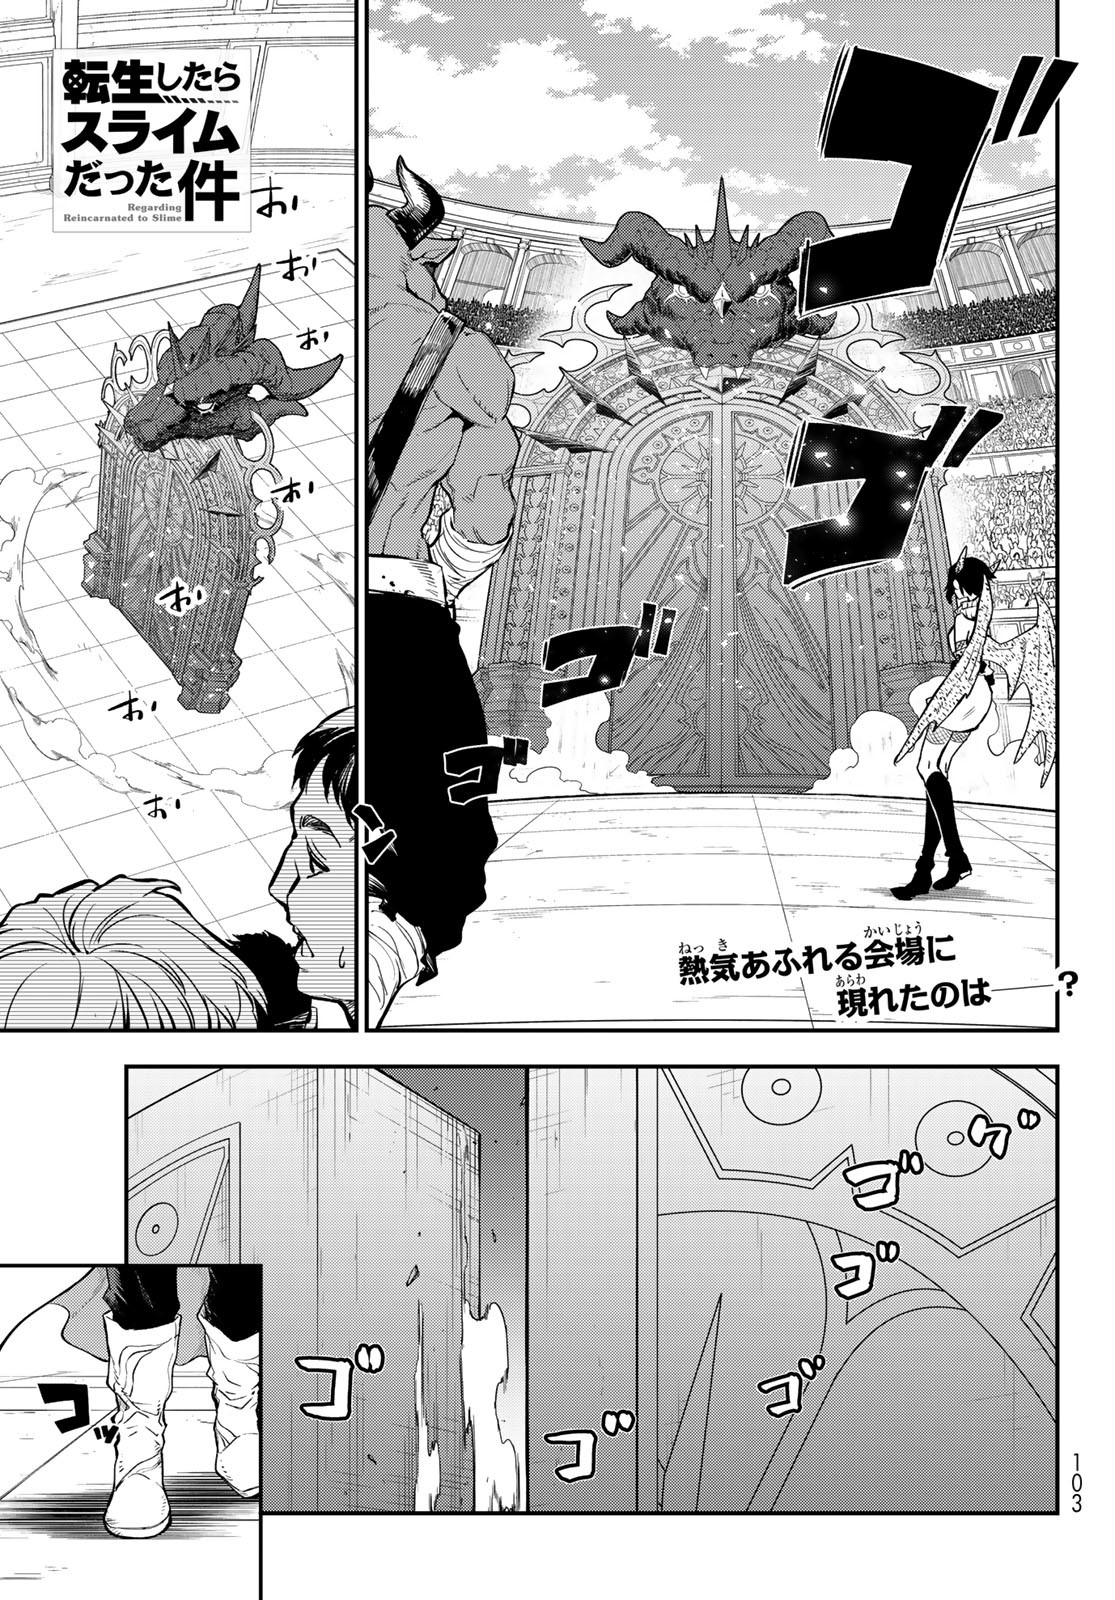 Tensei Shitara Slime Datta Ken - Chapter 113 - Page 1